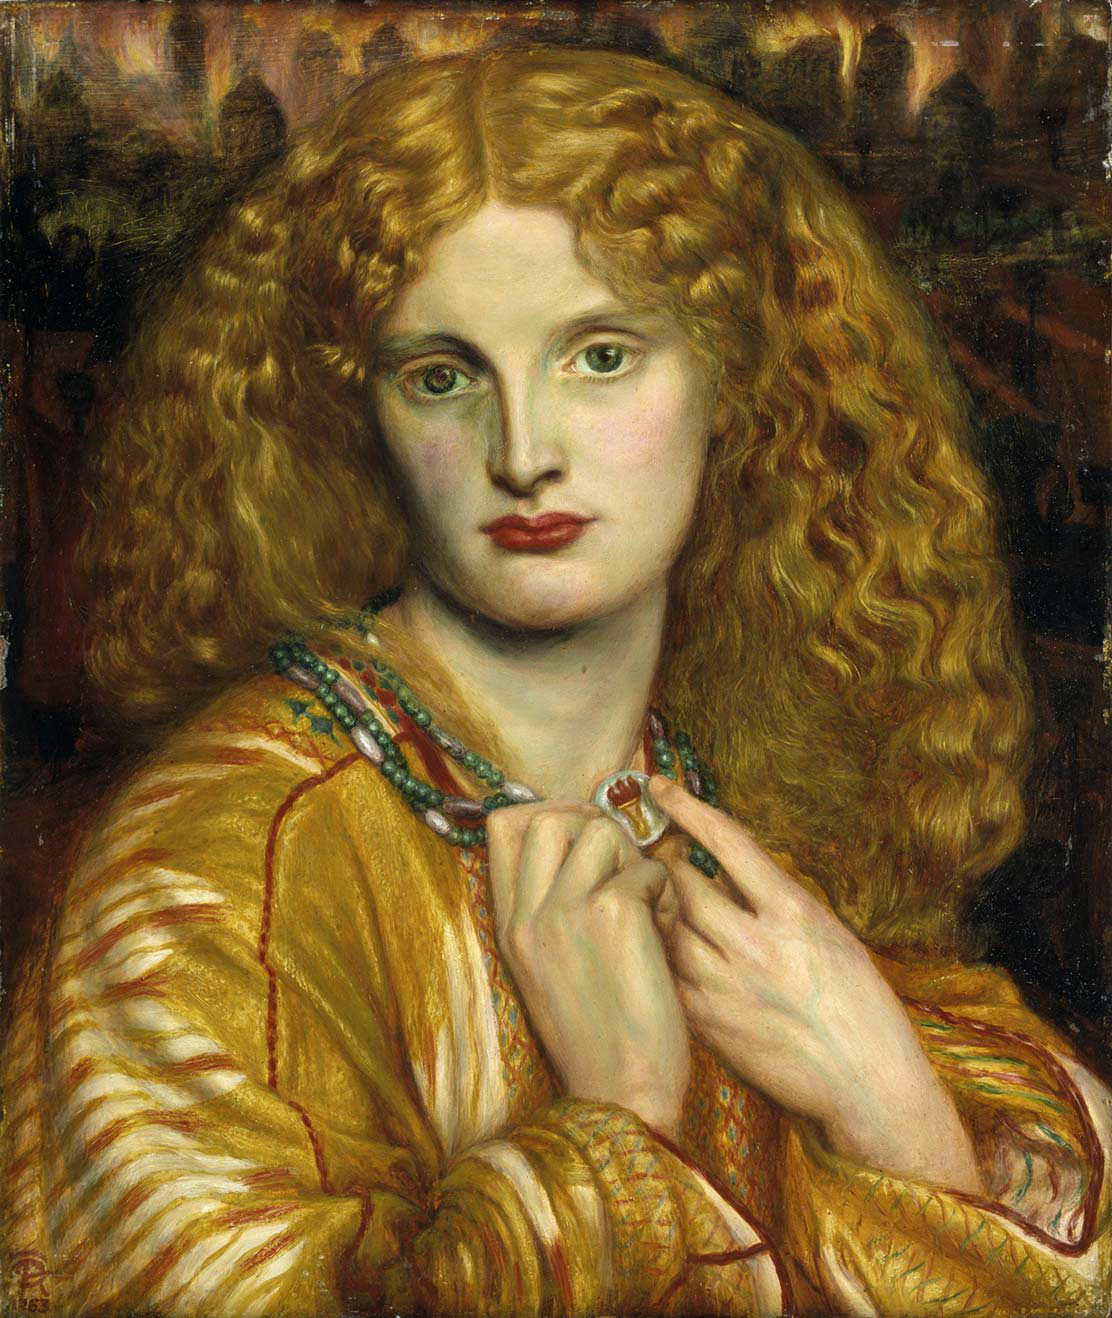 Helen of Troy by Dante Gabriel Rossetti - 1863